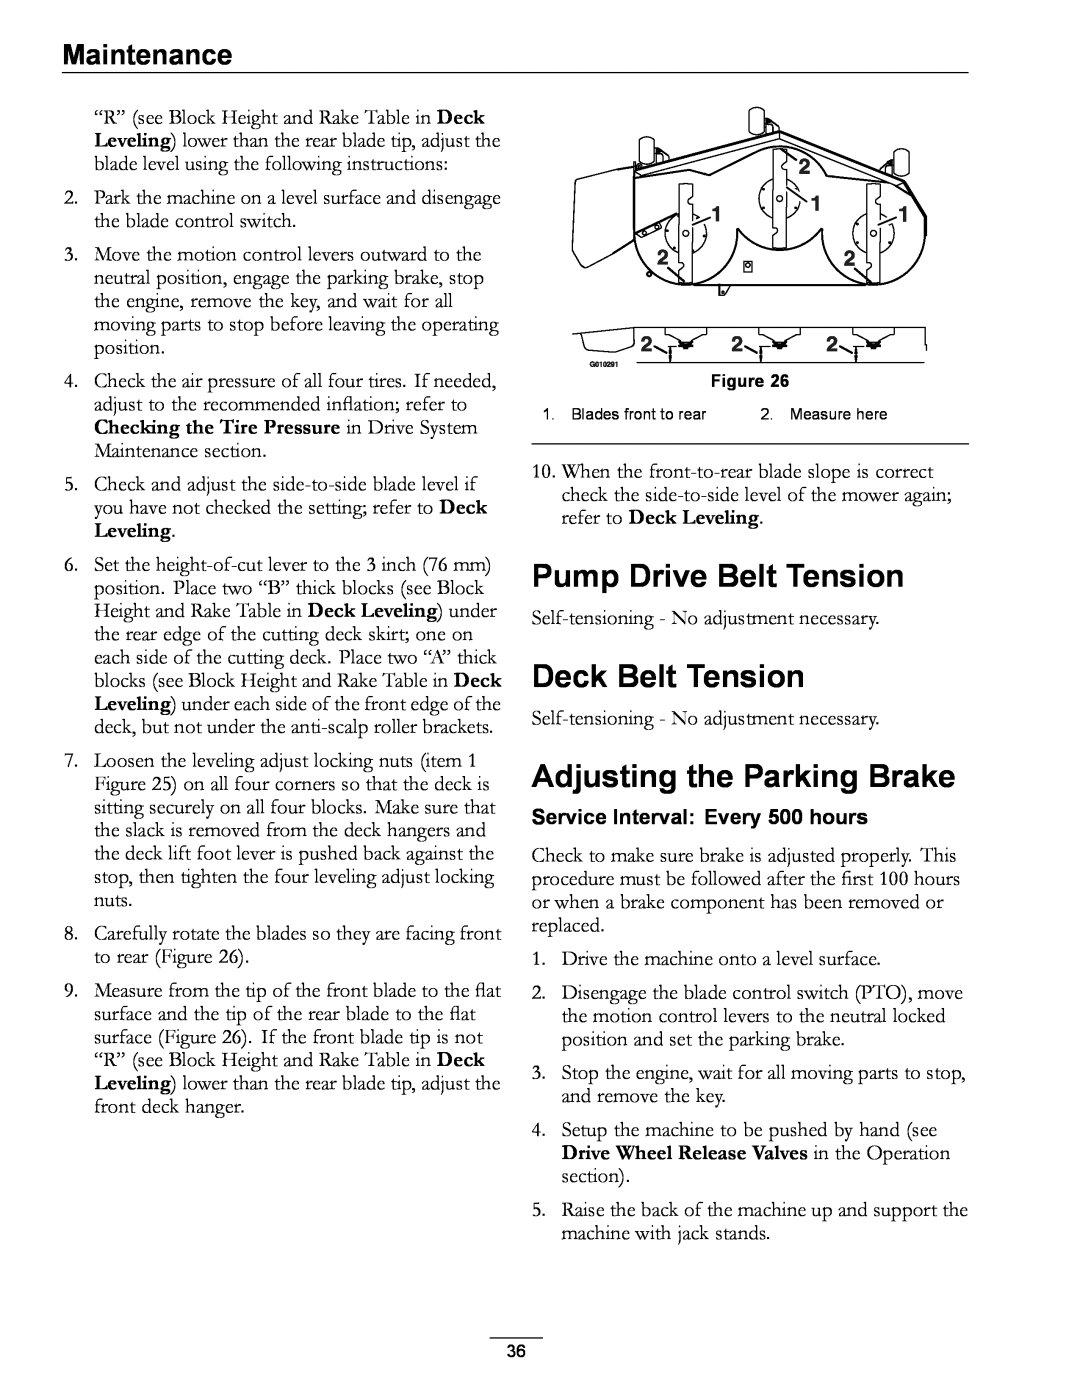 Exmark 4500-996 Rev A manual Pump Drive Belt Tension, Deck Belt Tension, Adjusting the Parking Brake, Maintenance 